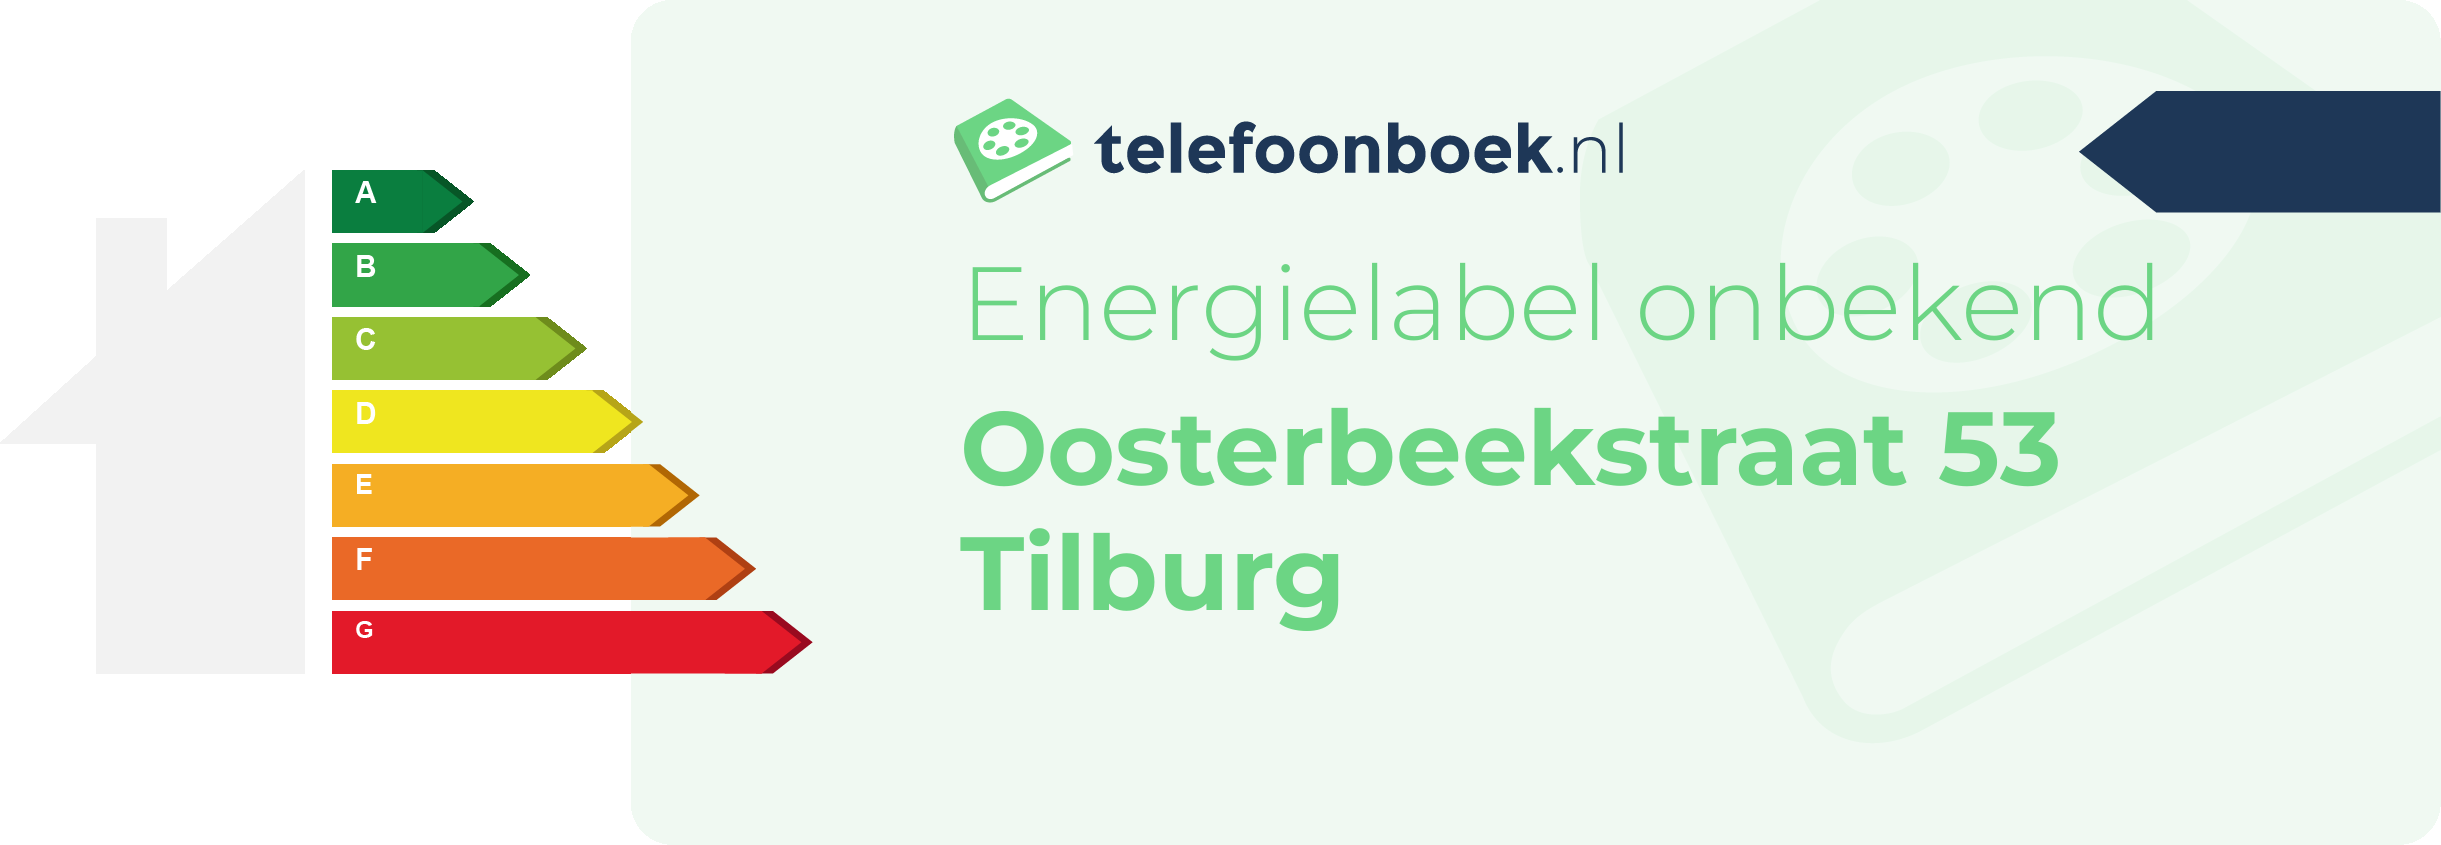 Energielabel Oosterbeekstraat 53 Tilburg